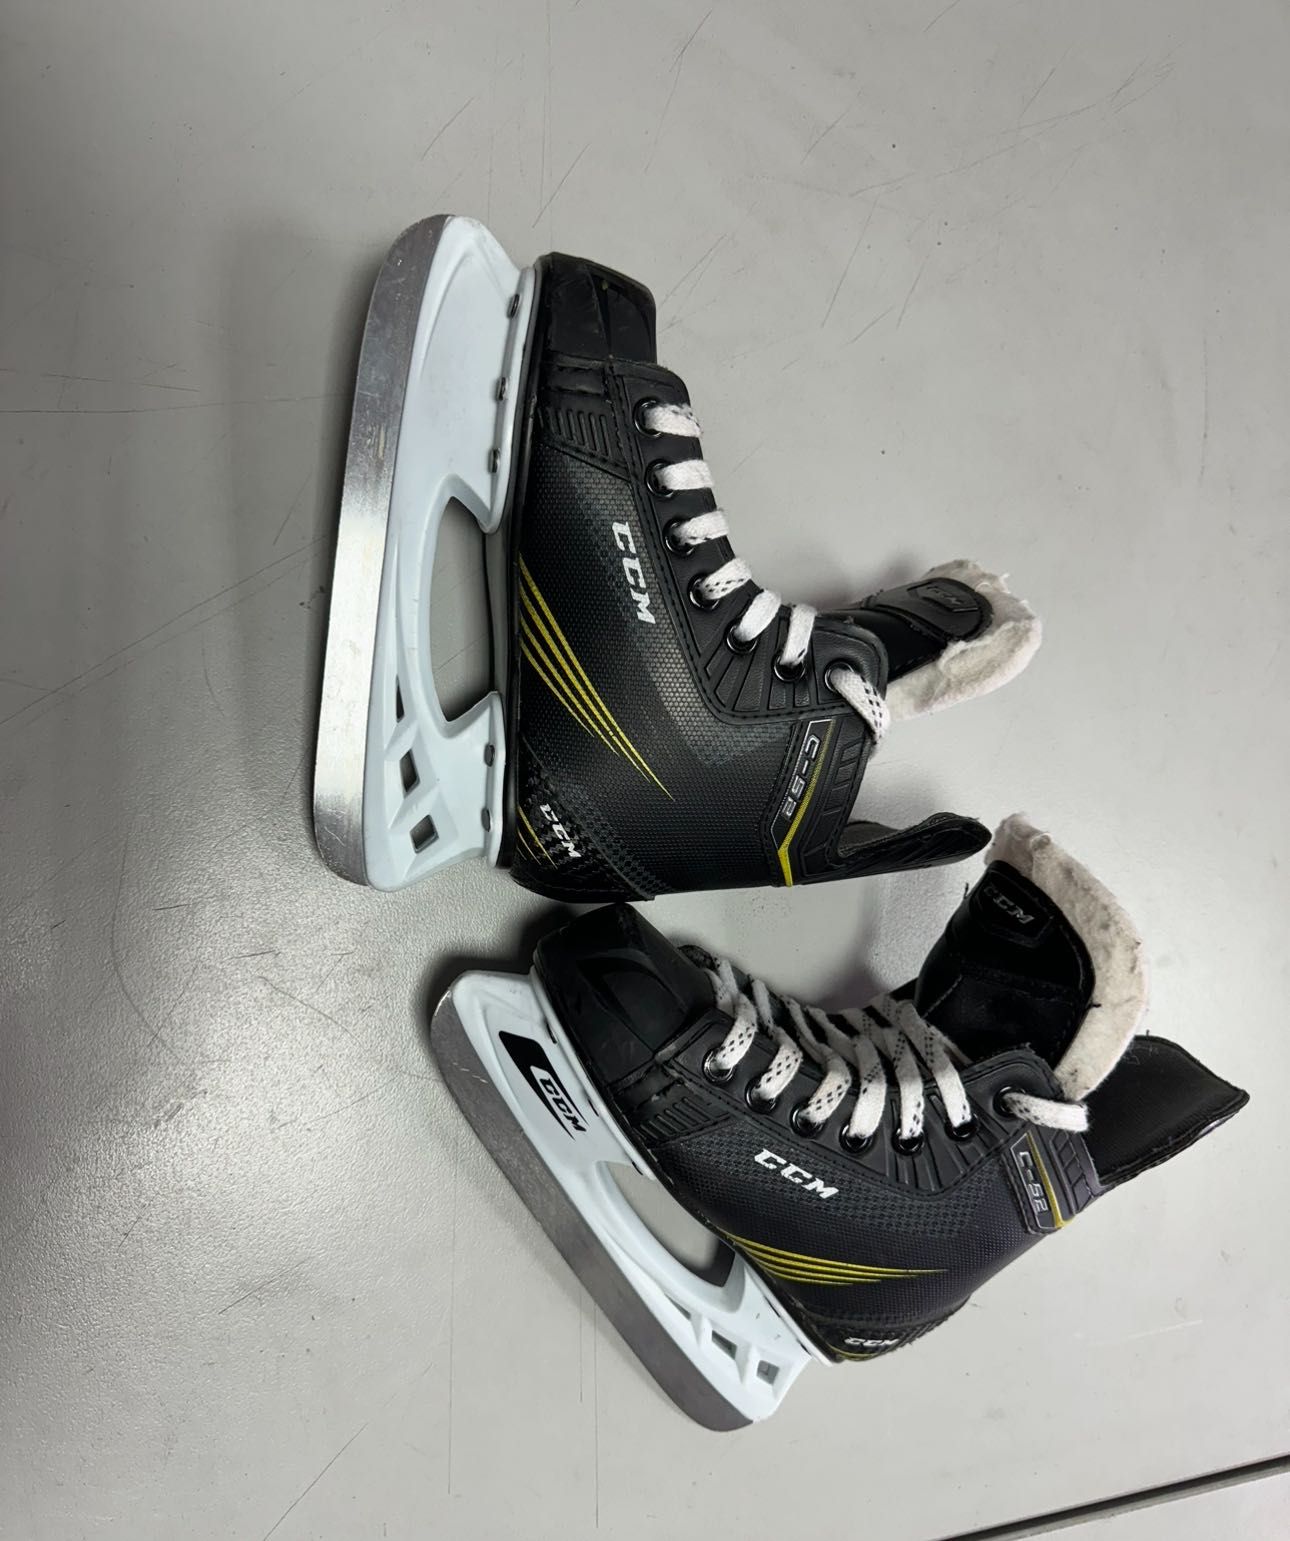 Кънки за хокей на лед CCM / Bauer